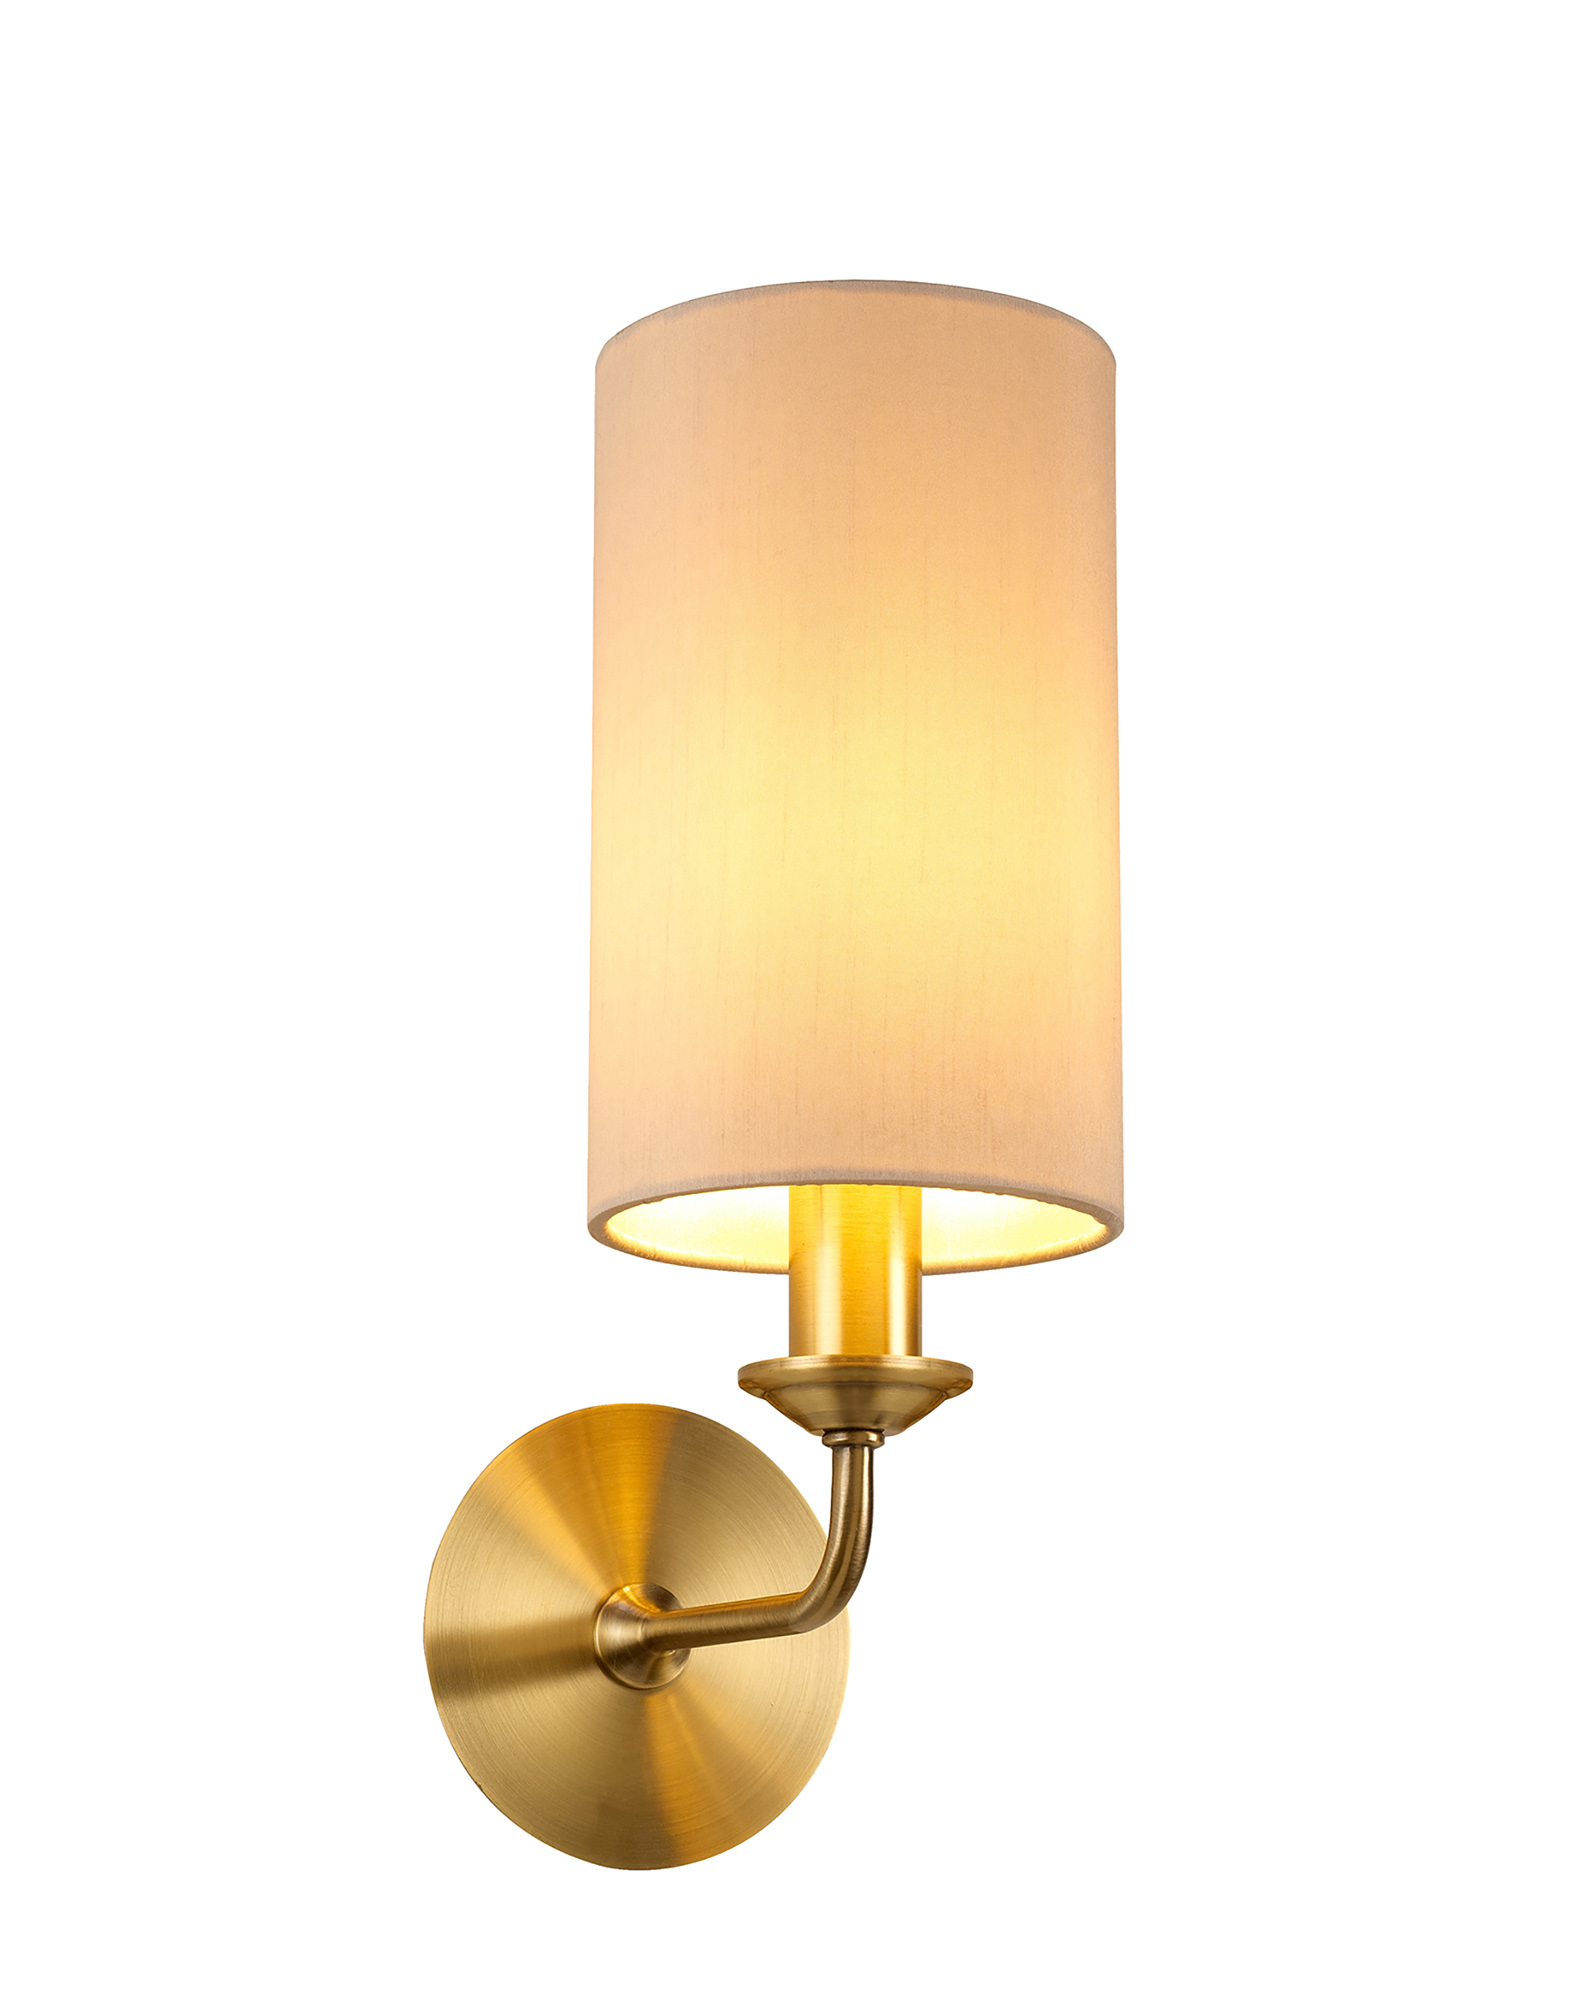 DK0041  Banyan Wall Lamp 1 Light Antique Brass, Nude Beige/Moonlight